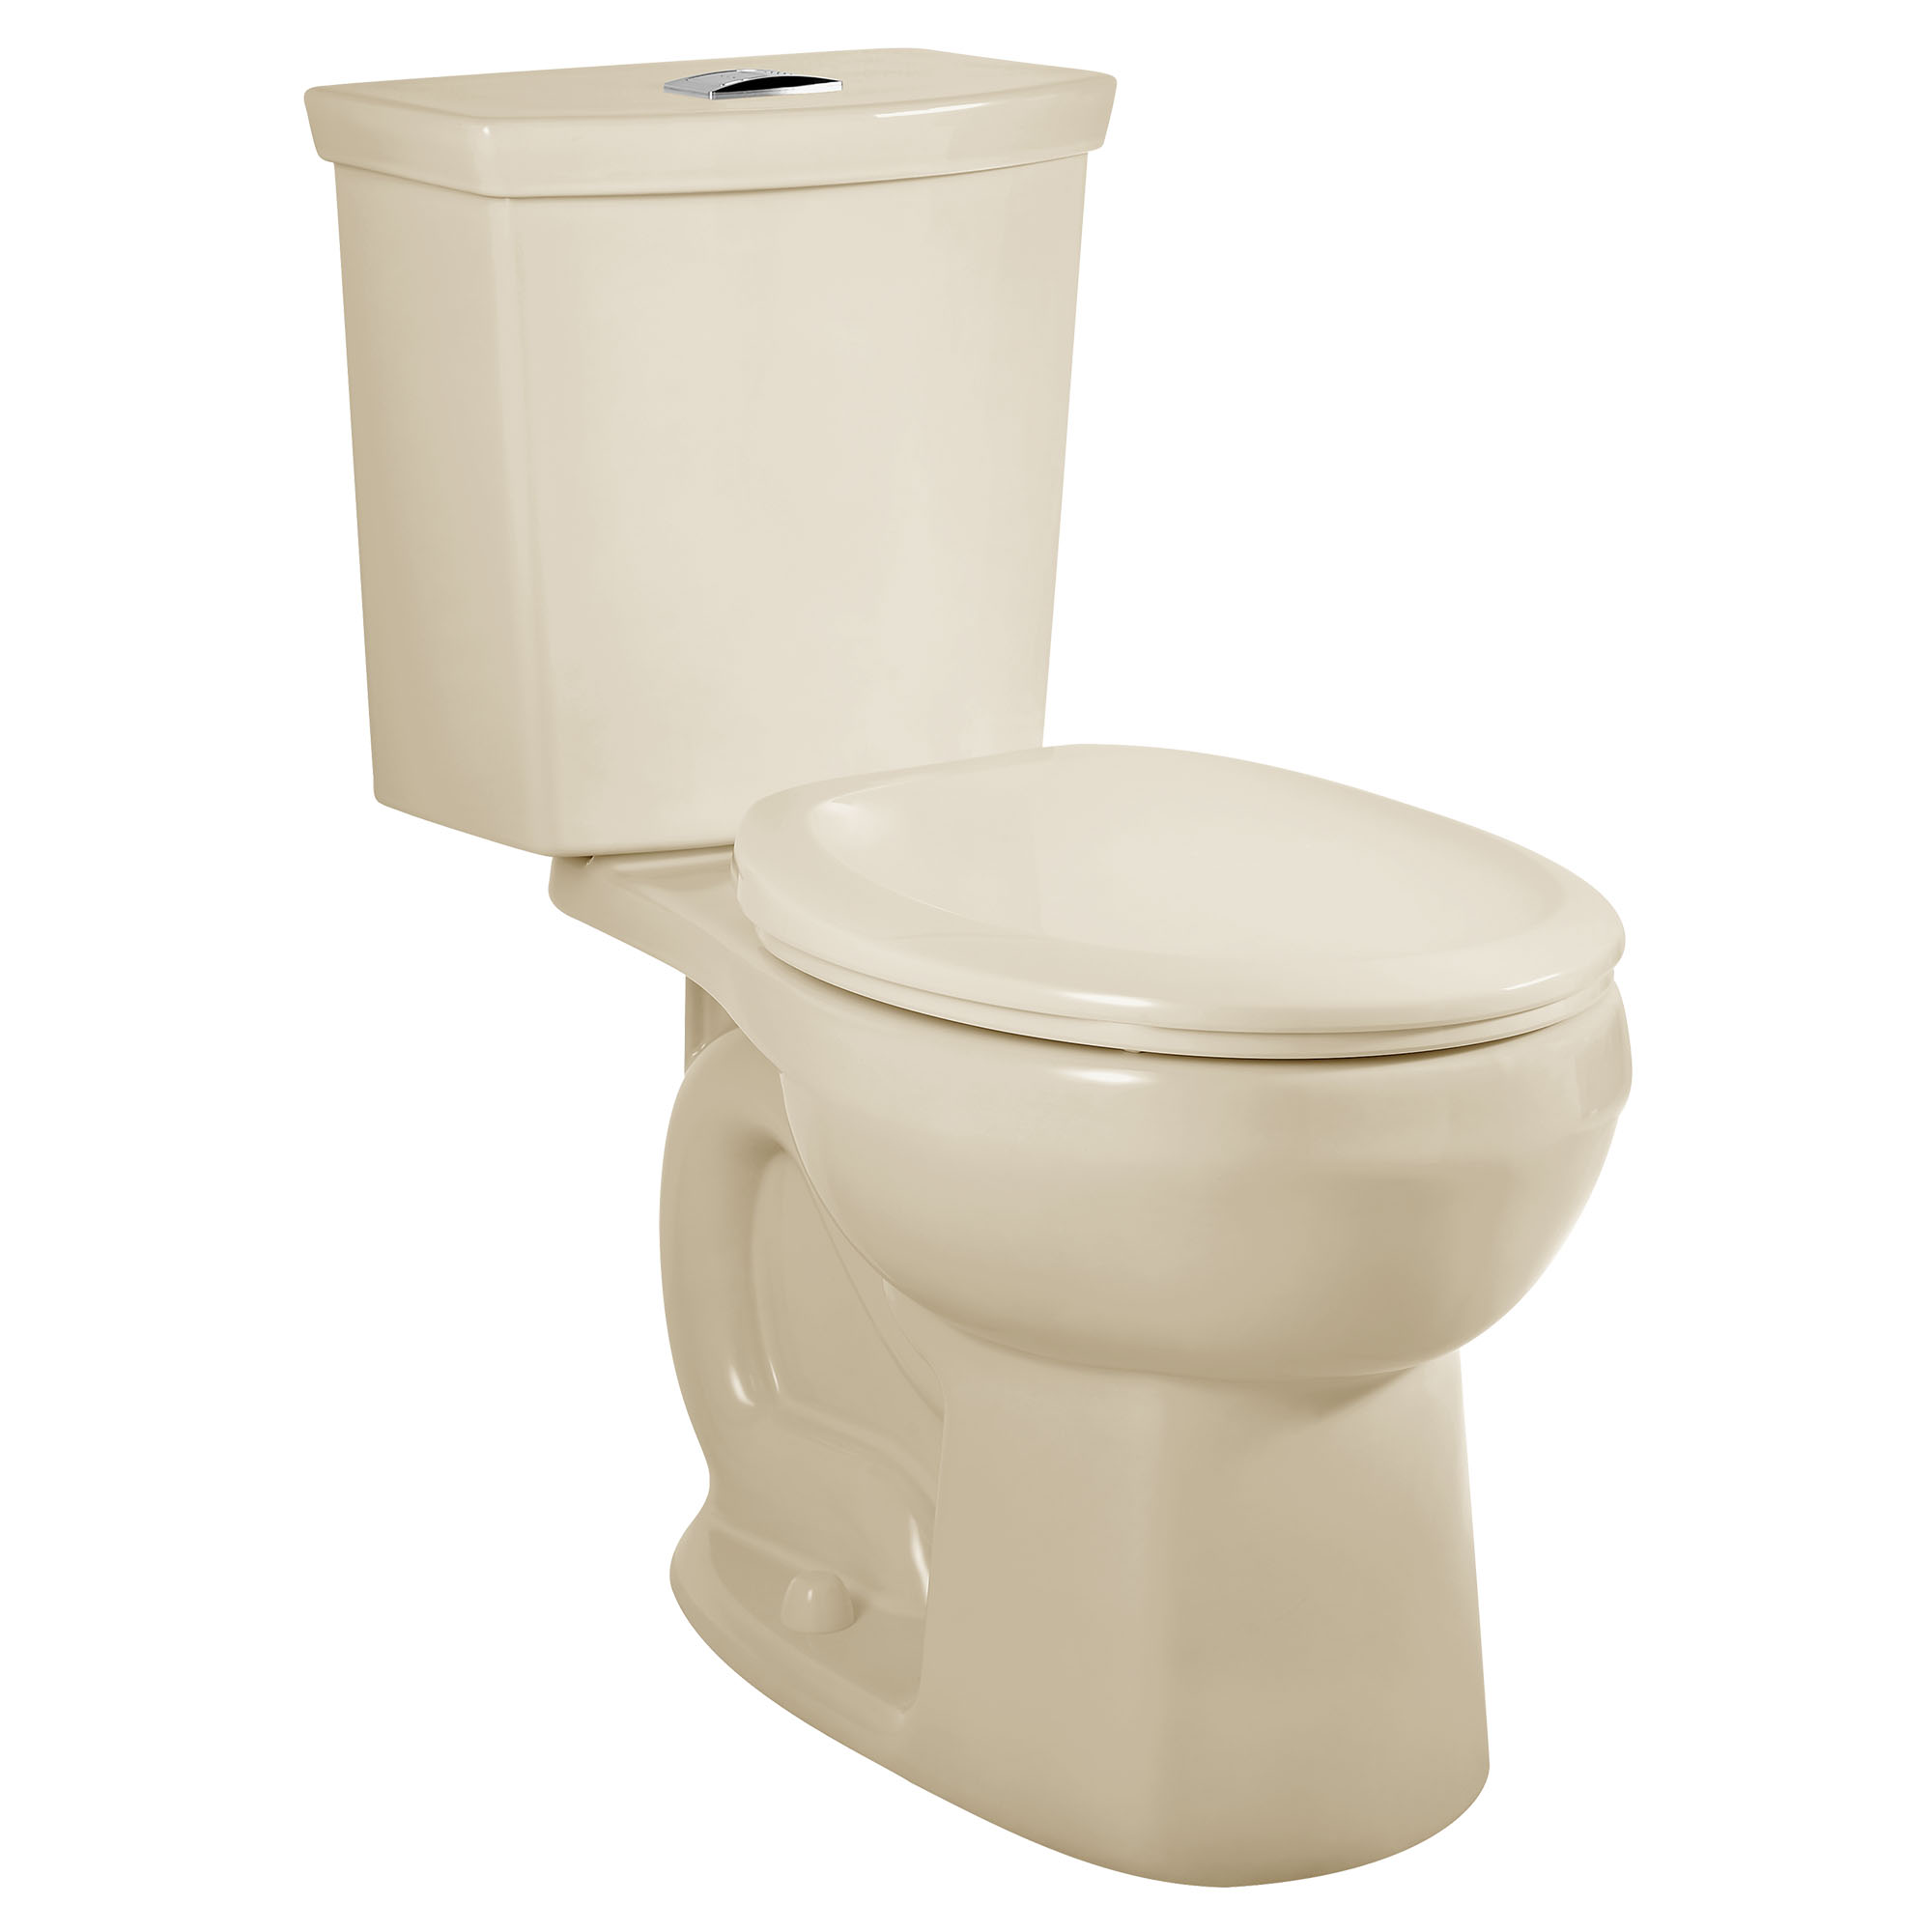 Toilette H2Option, 2 pièces, chasse double 1,28 gpc/4,8 lpc et 0,92 gpc/3,5 lpc, à cuvette au devant rond à hauteur régulière, sans siège